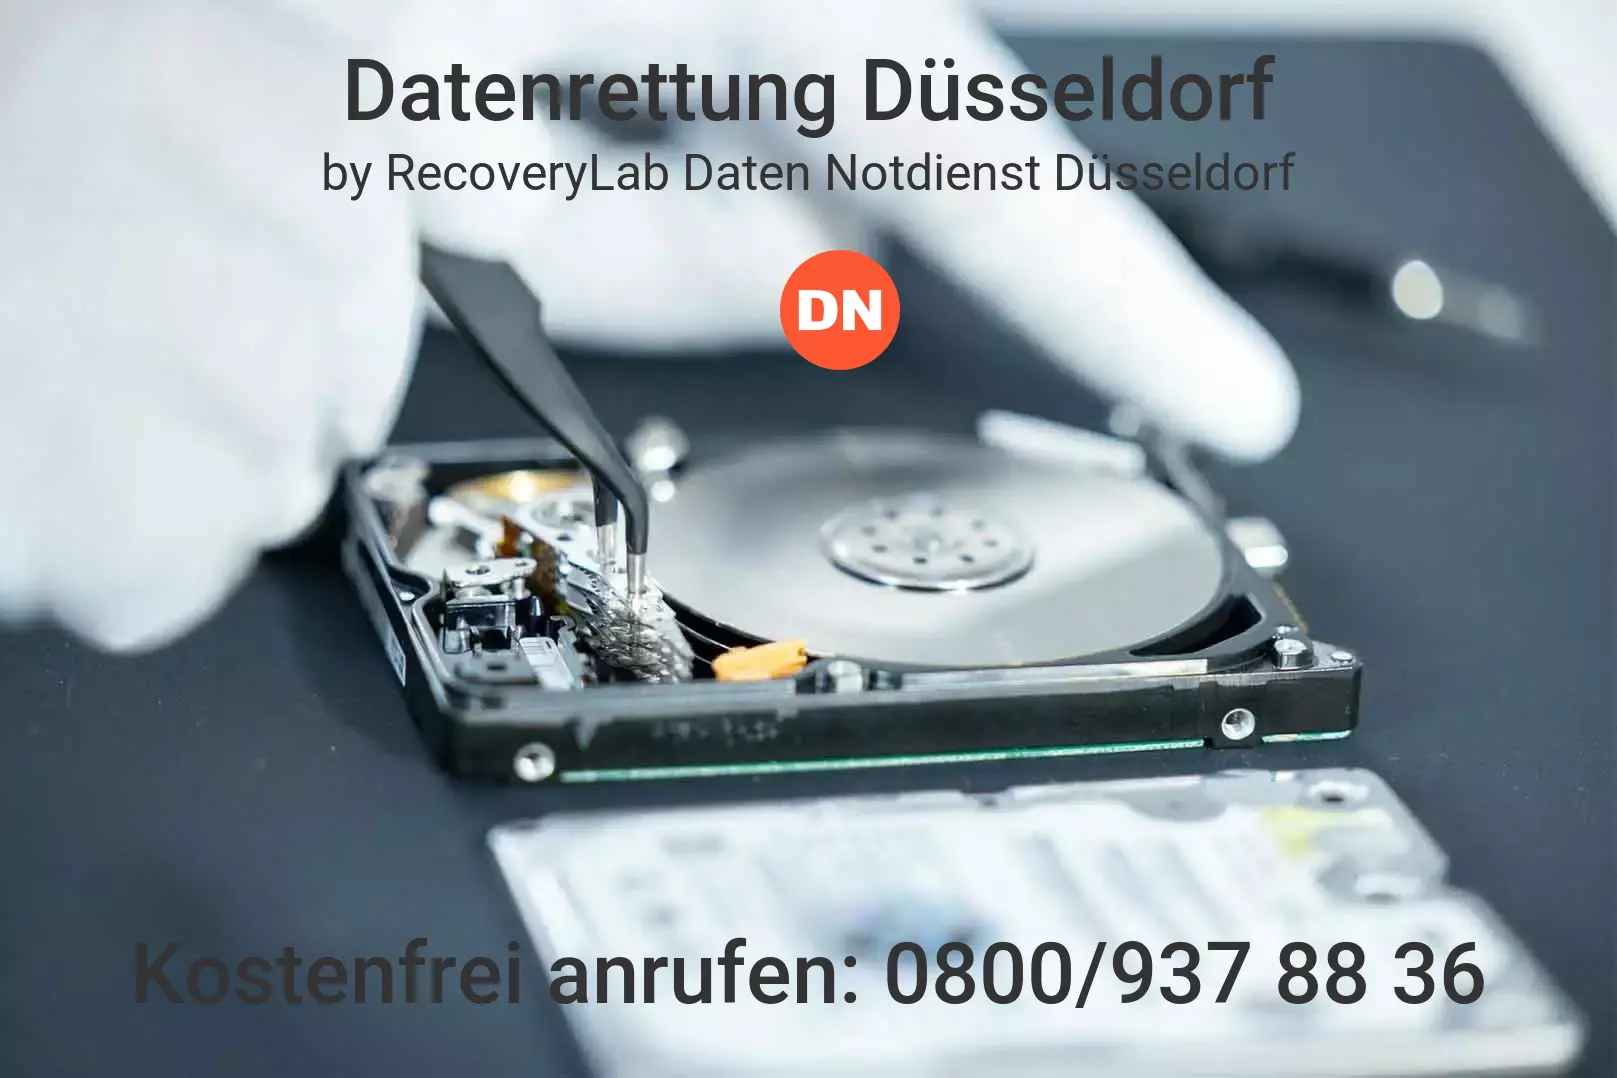 Fallstudie zu erfolgreicher Datenrettung externe Festplatte Düsseldorf